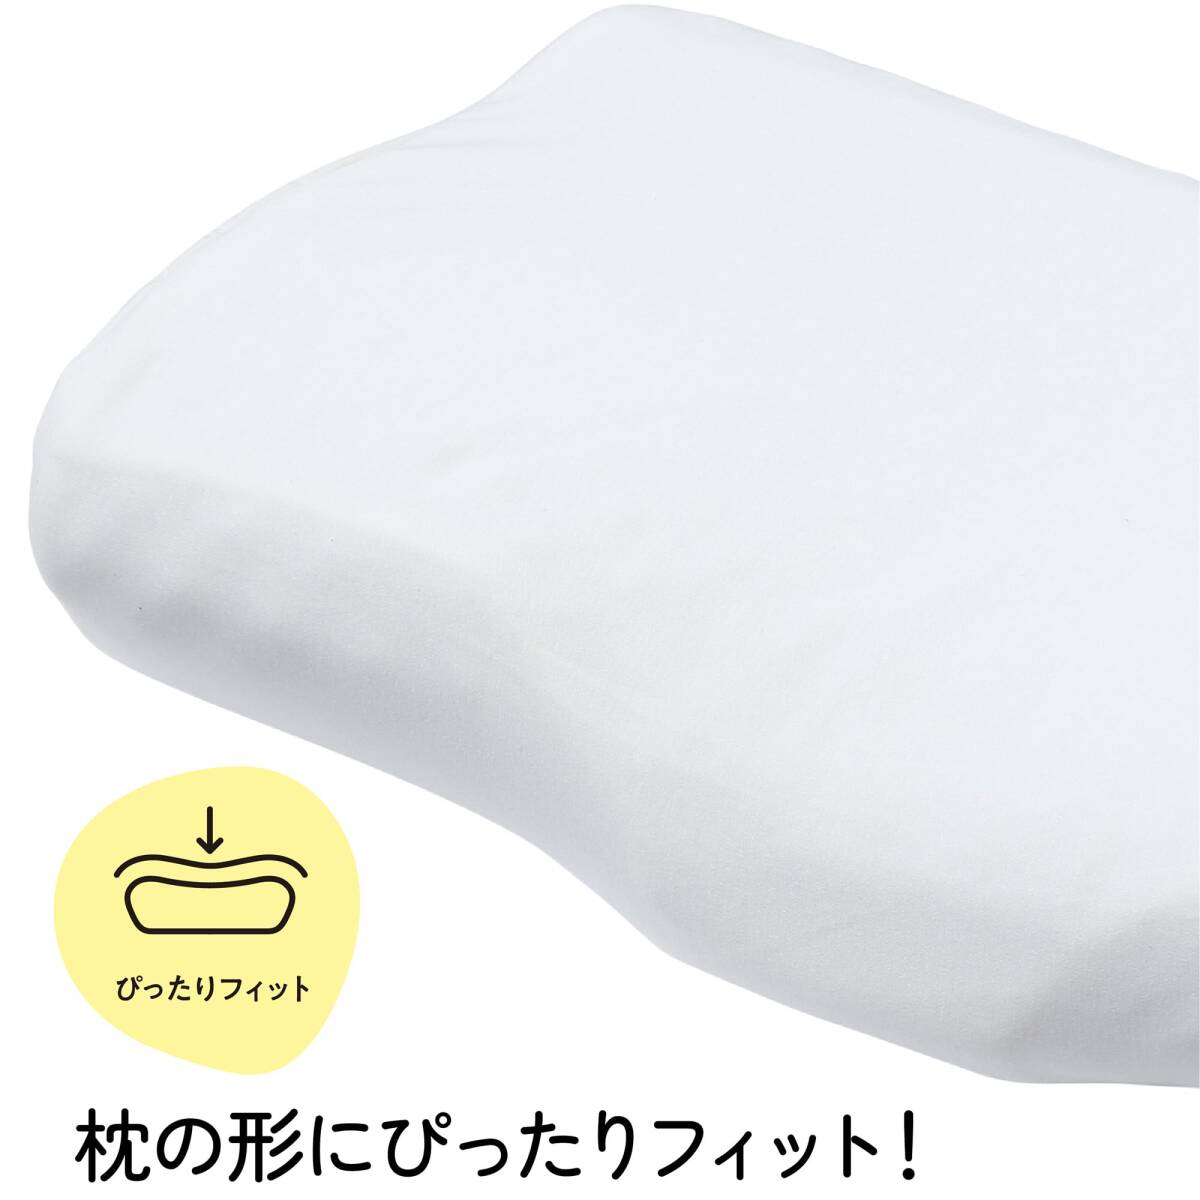 nishikawa【西川】 睡眠ラボ ドッツ 専用 枕カバー 洗える ぴったりフィット 柔らかな肌触り Dots 日本製 アイボリー 61X37_画像4